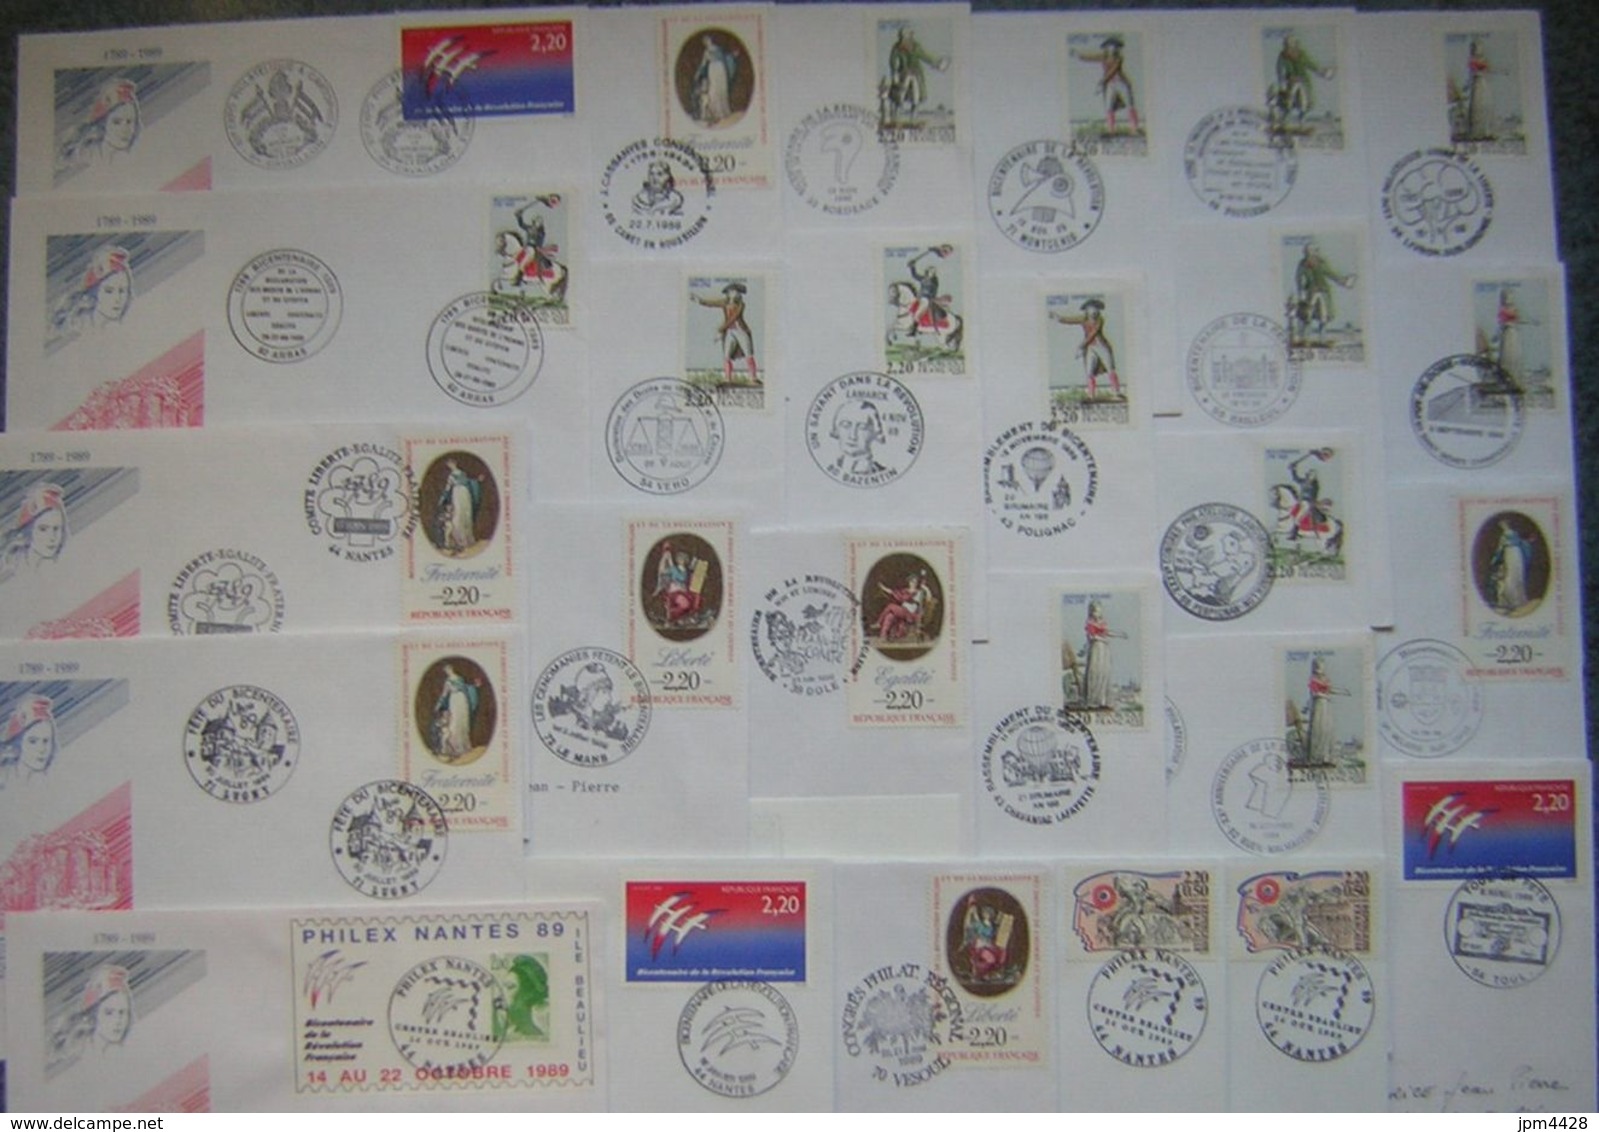 France Révolution Française bicentenaire 1789-1989 - lot 176 Enveloppes oblitérations temporaires différentes, et 1 bloc